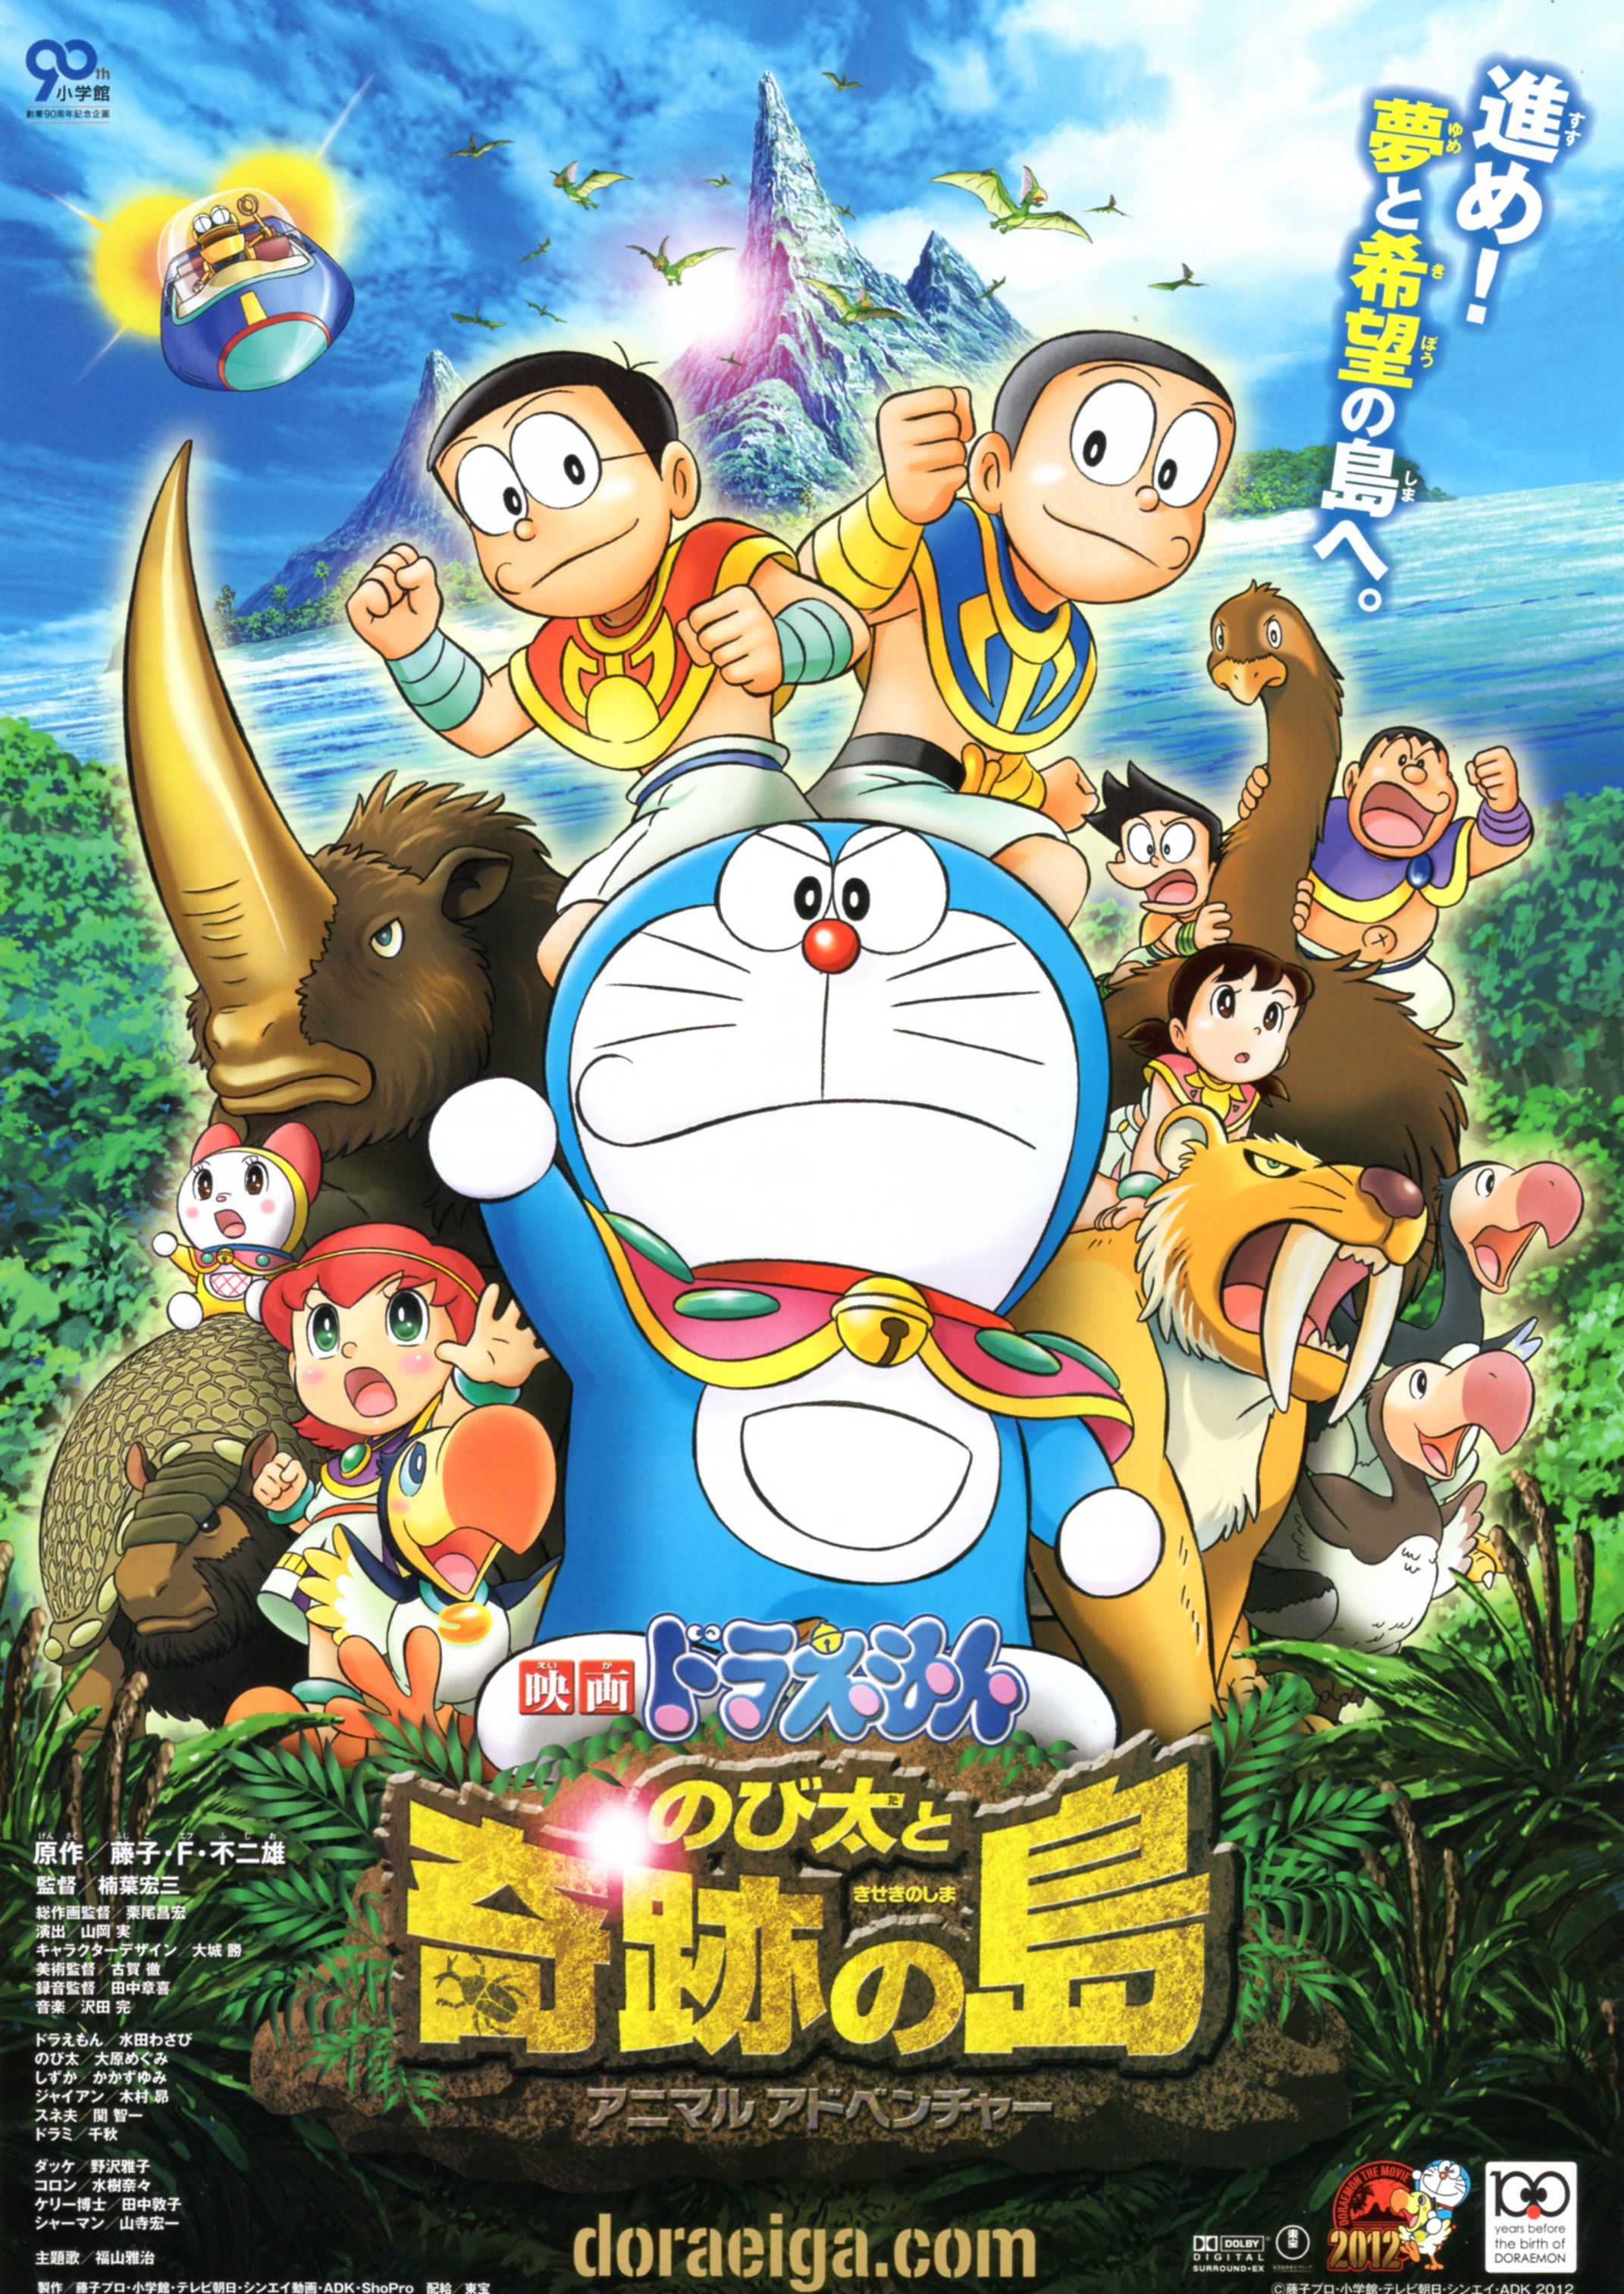 Doraemon The Movie 2012 โดเรม่อน เดอะมูฟวี่ ตอน โนบิตะผจญภัยในเกาะมหัศจรรย์ แอนิมอลแอดเวนเจอร์ พากย์ไทย